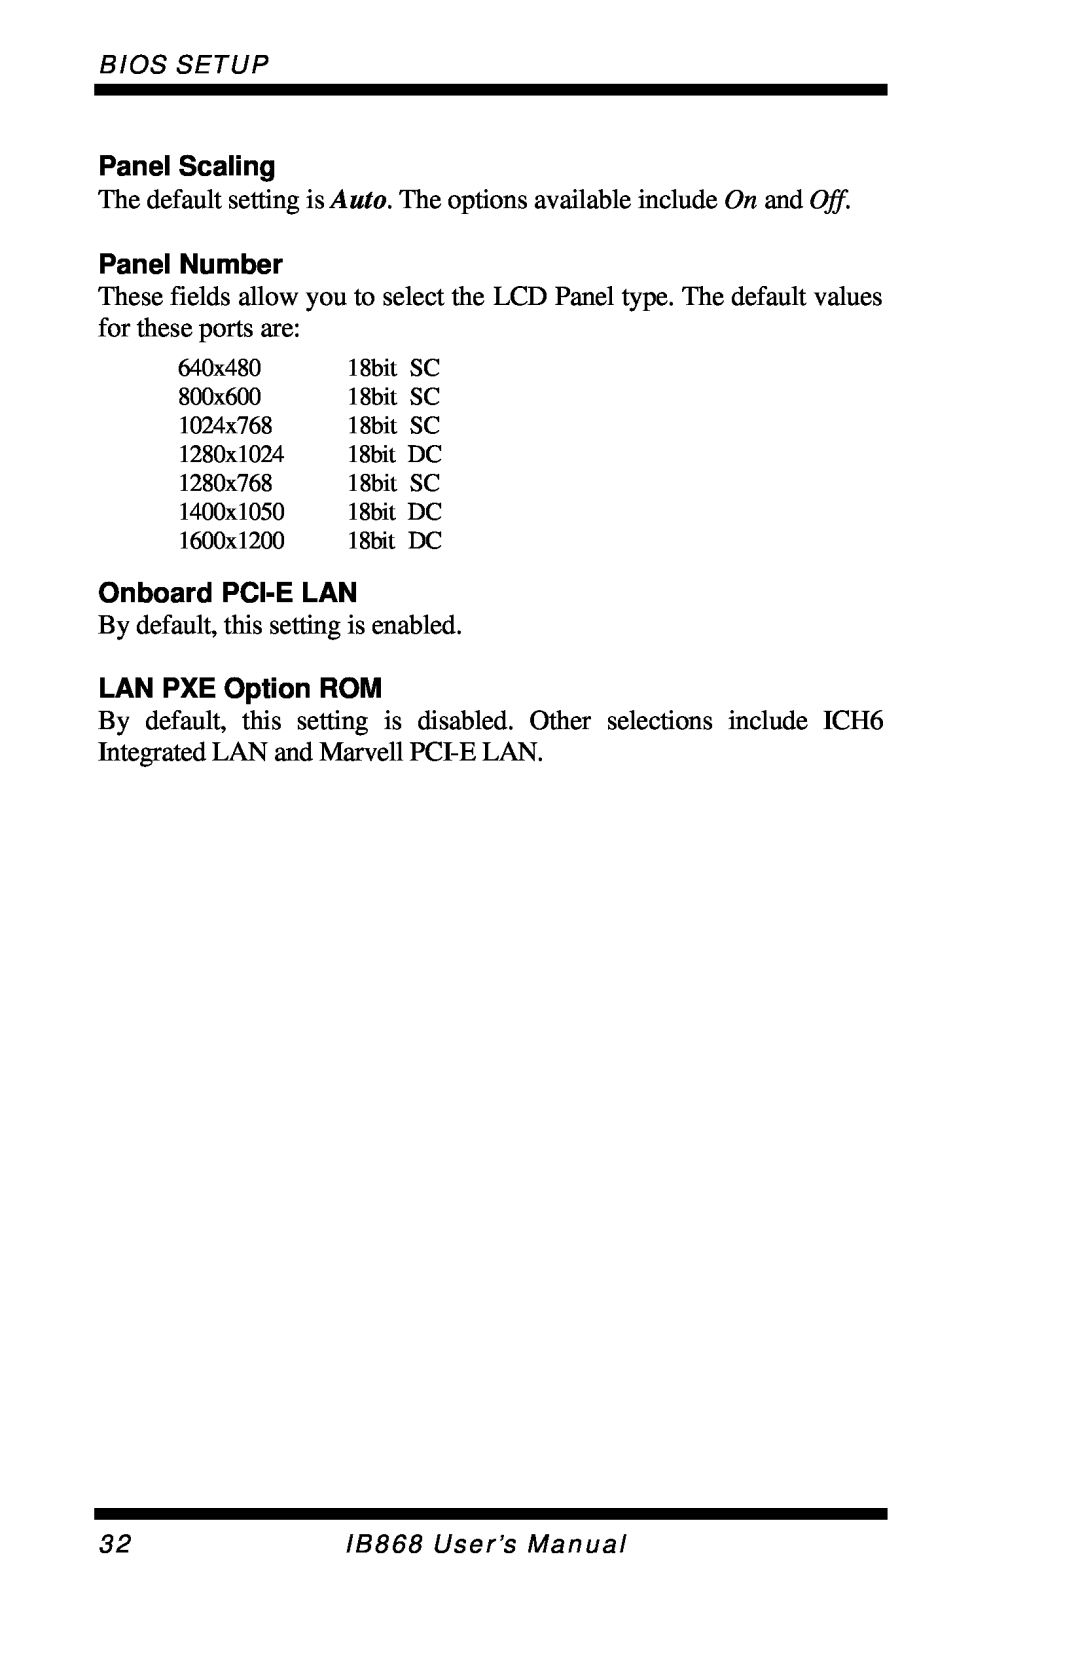 Intel IB868 user manual Panel Scaling, Panel Number, Onboard PCI-ELAN, LAN PXE Option ROM 